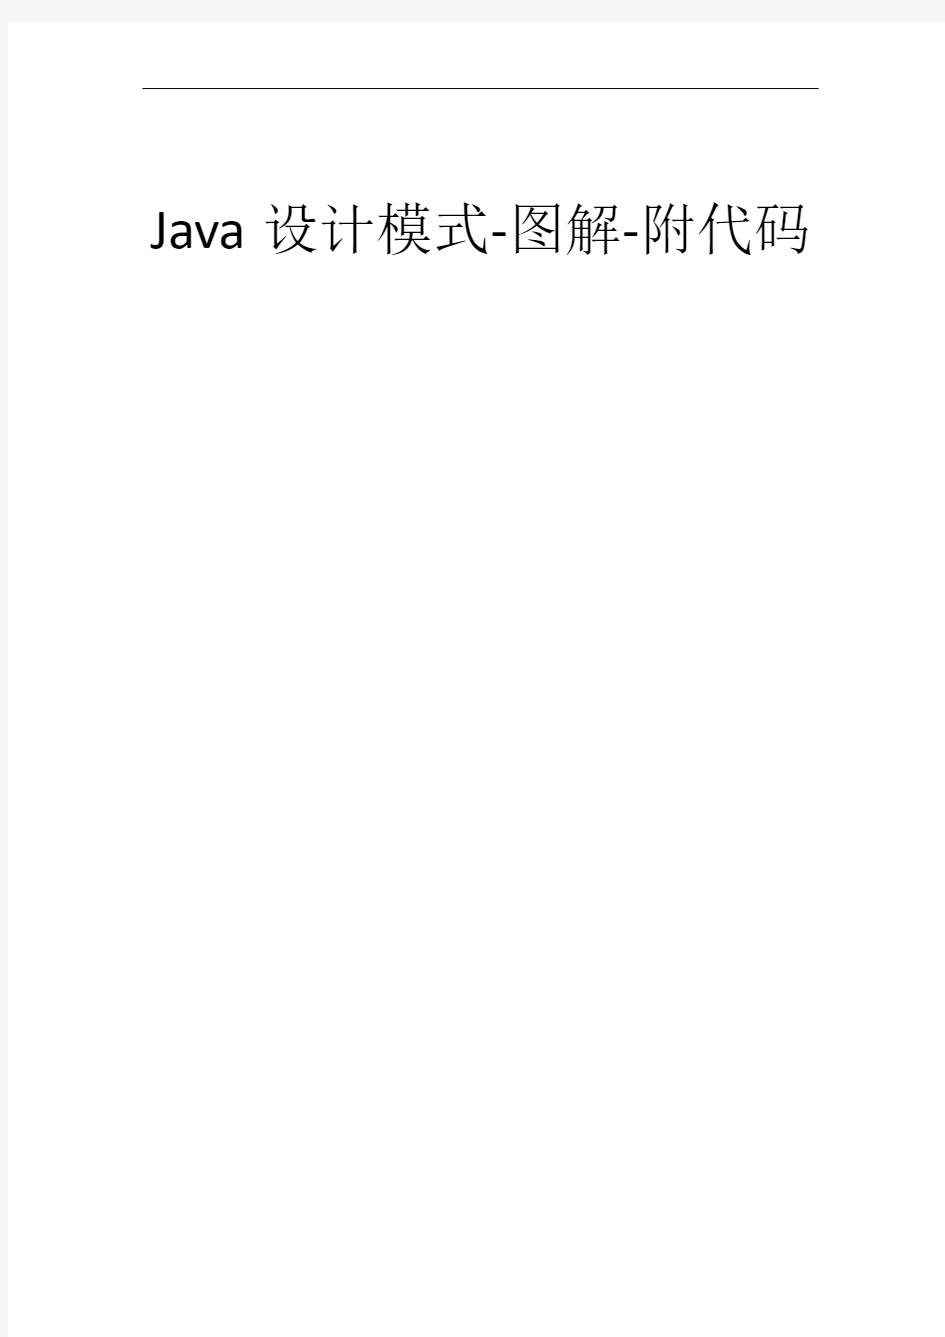 Java设计模式-图解-附代码-学习的好资料